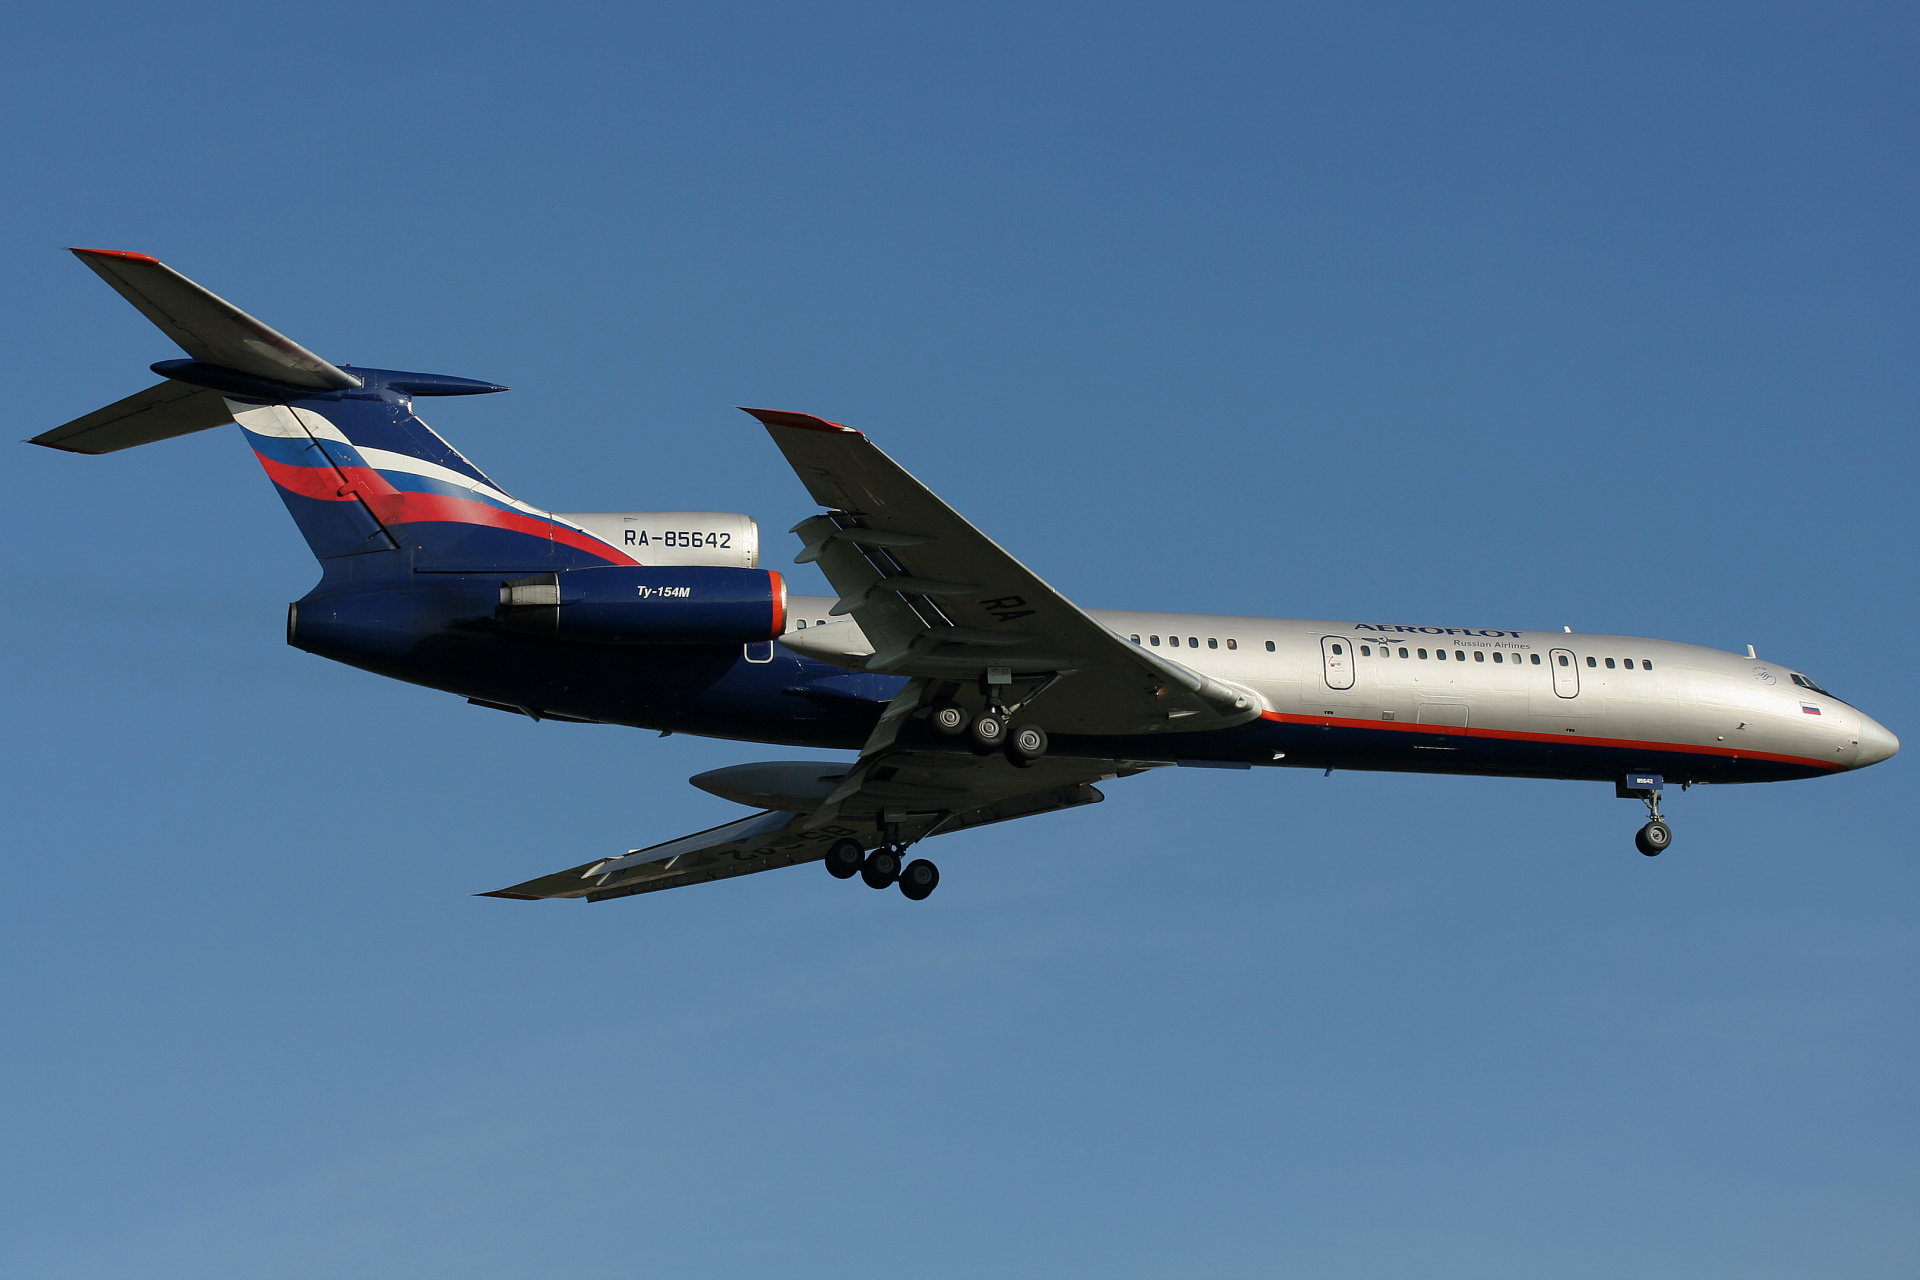 RA-85642 (Aircraft » EPWA Spotting » Tupolev Tu-154M » Aeroflot Russian Airlines)